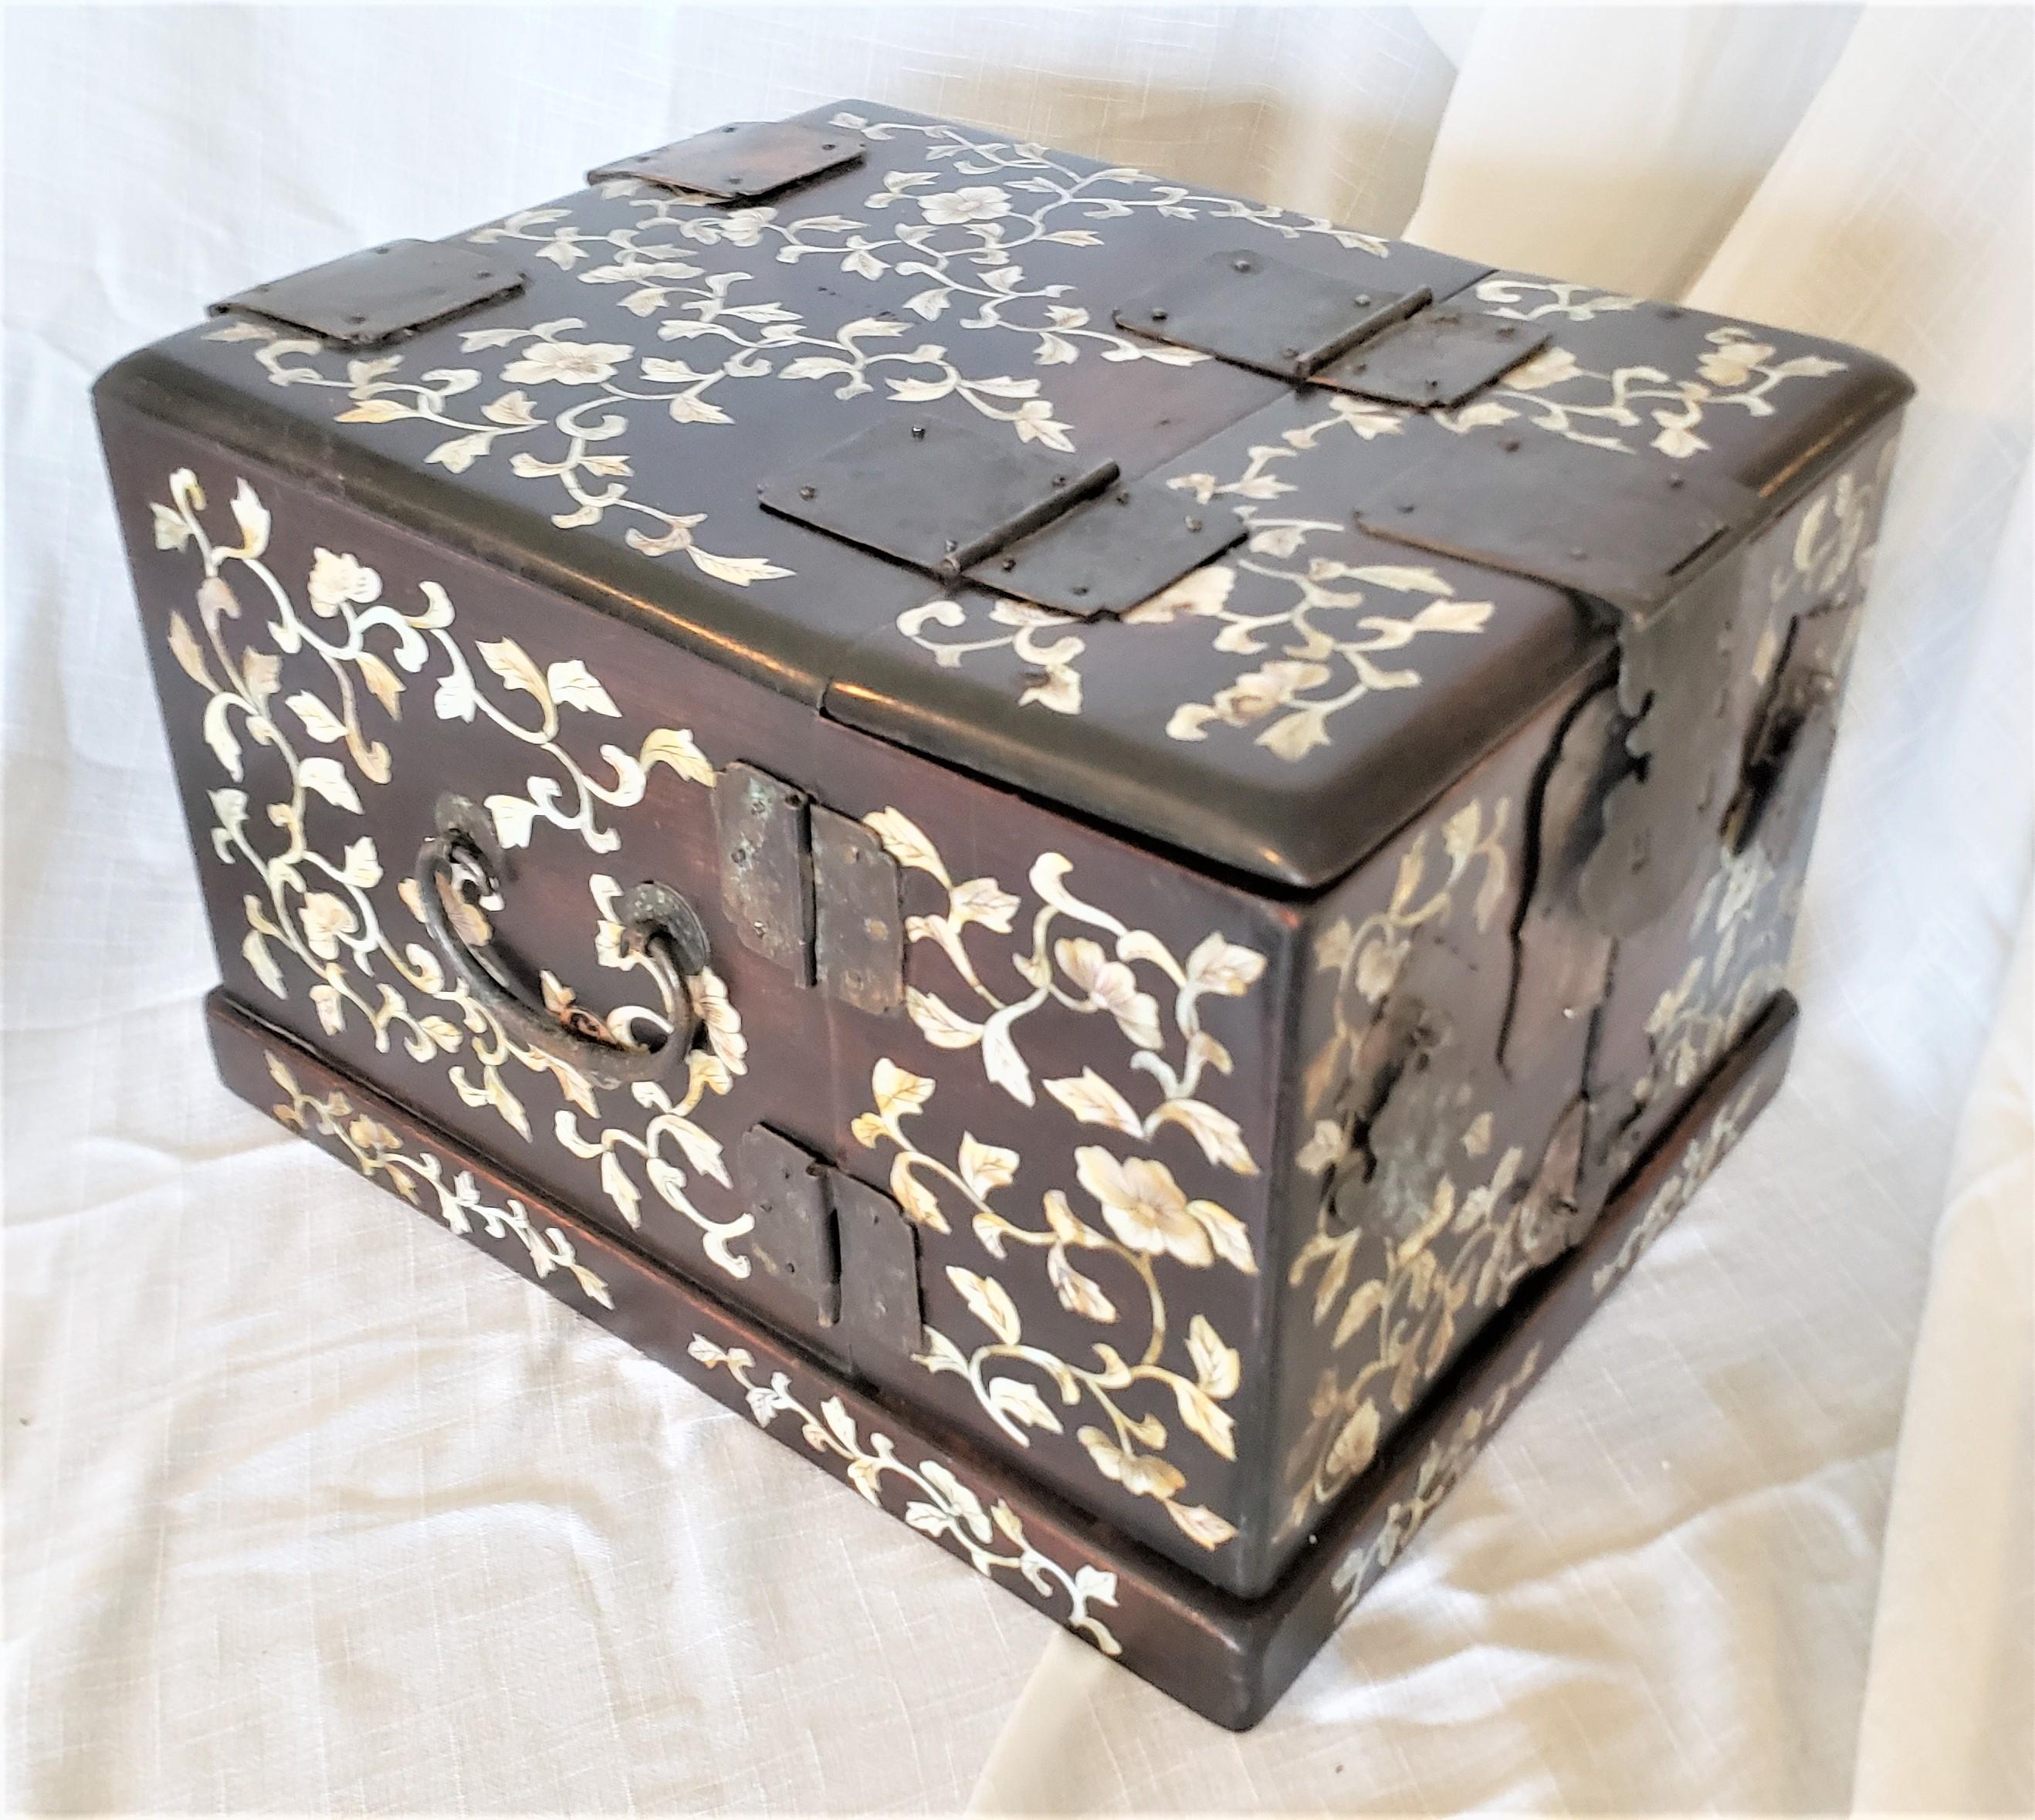 Cette boîte à bijoux très élaborée, ou coffret de maquillage, n'est pas signée, mais on suppose qu'elle a été fabriquée en Chine vers 1850 dans le style chinois d'exportation de l'époque. Le coffre est composé de bois avec de multiples petits